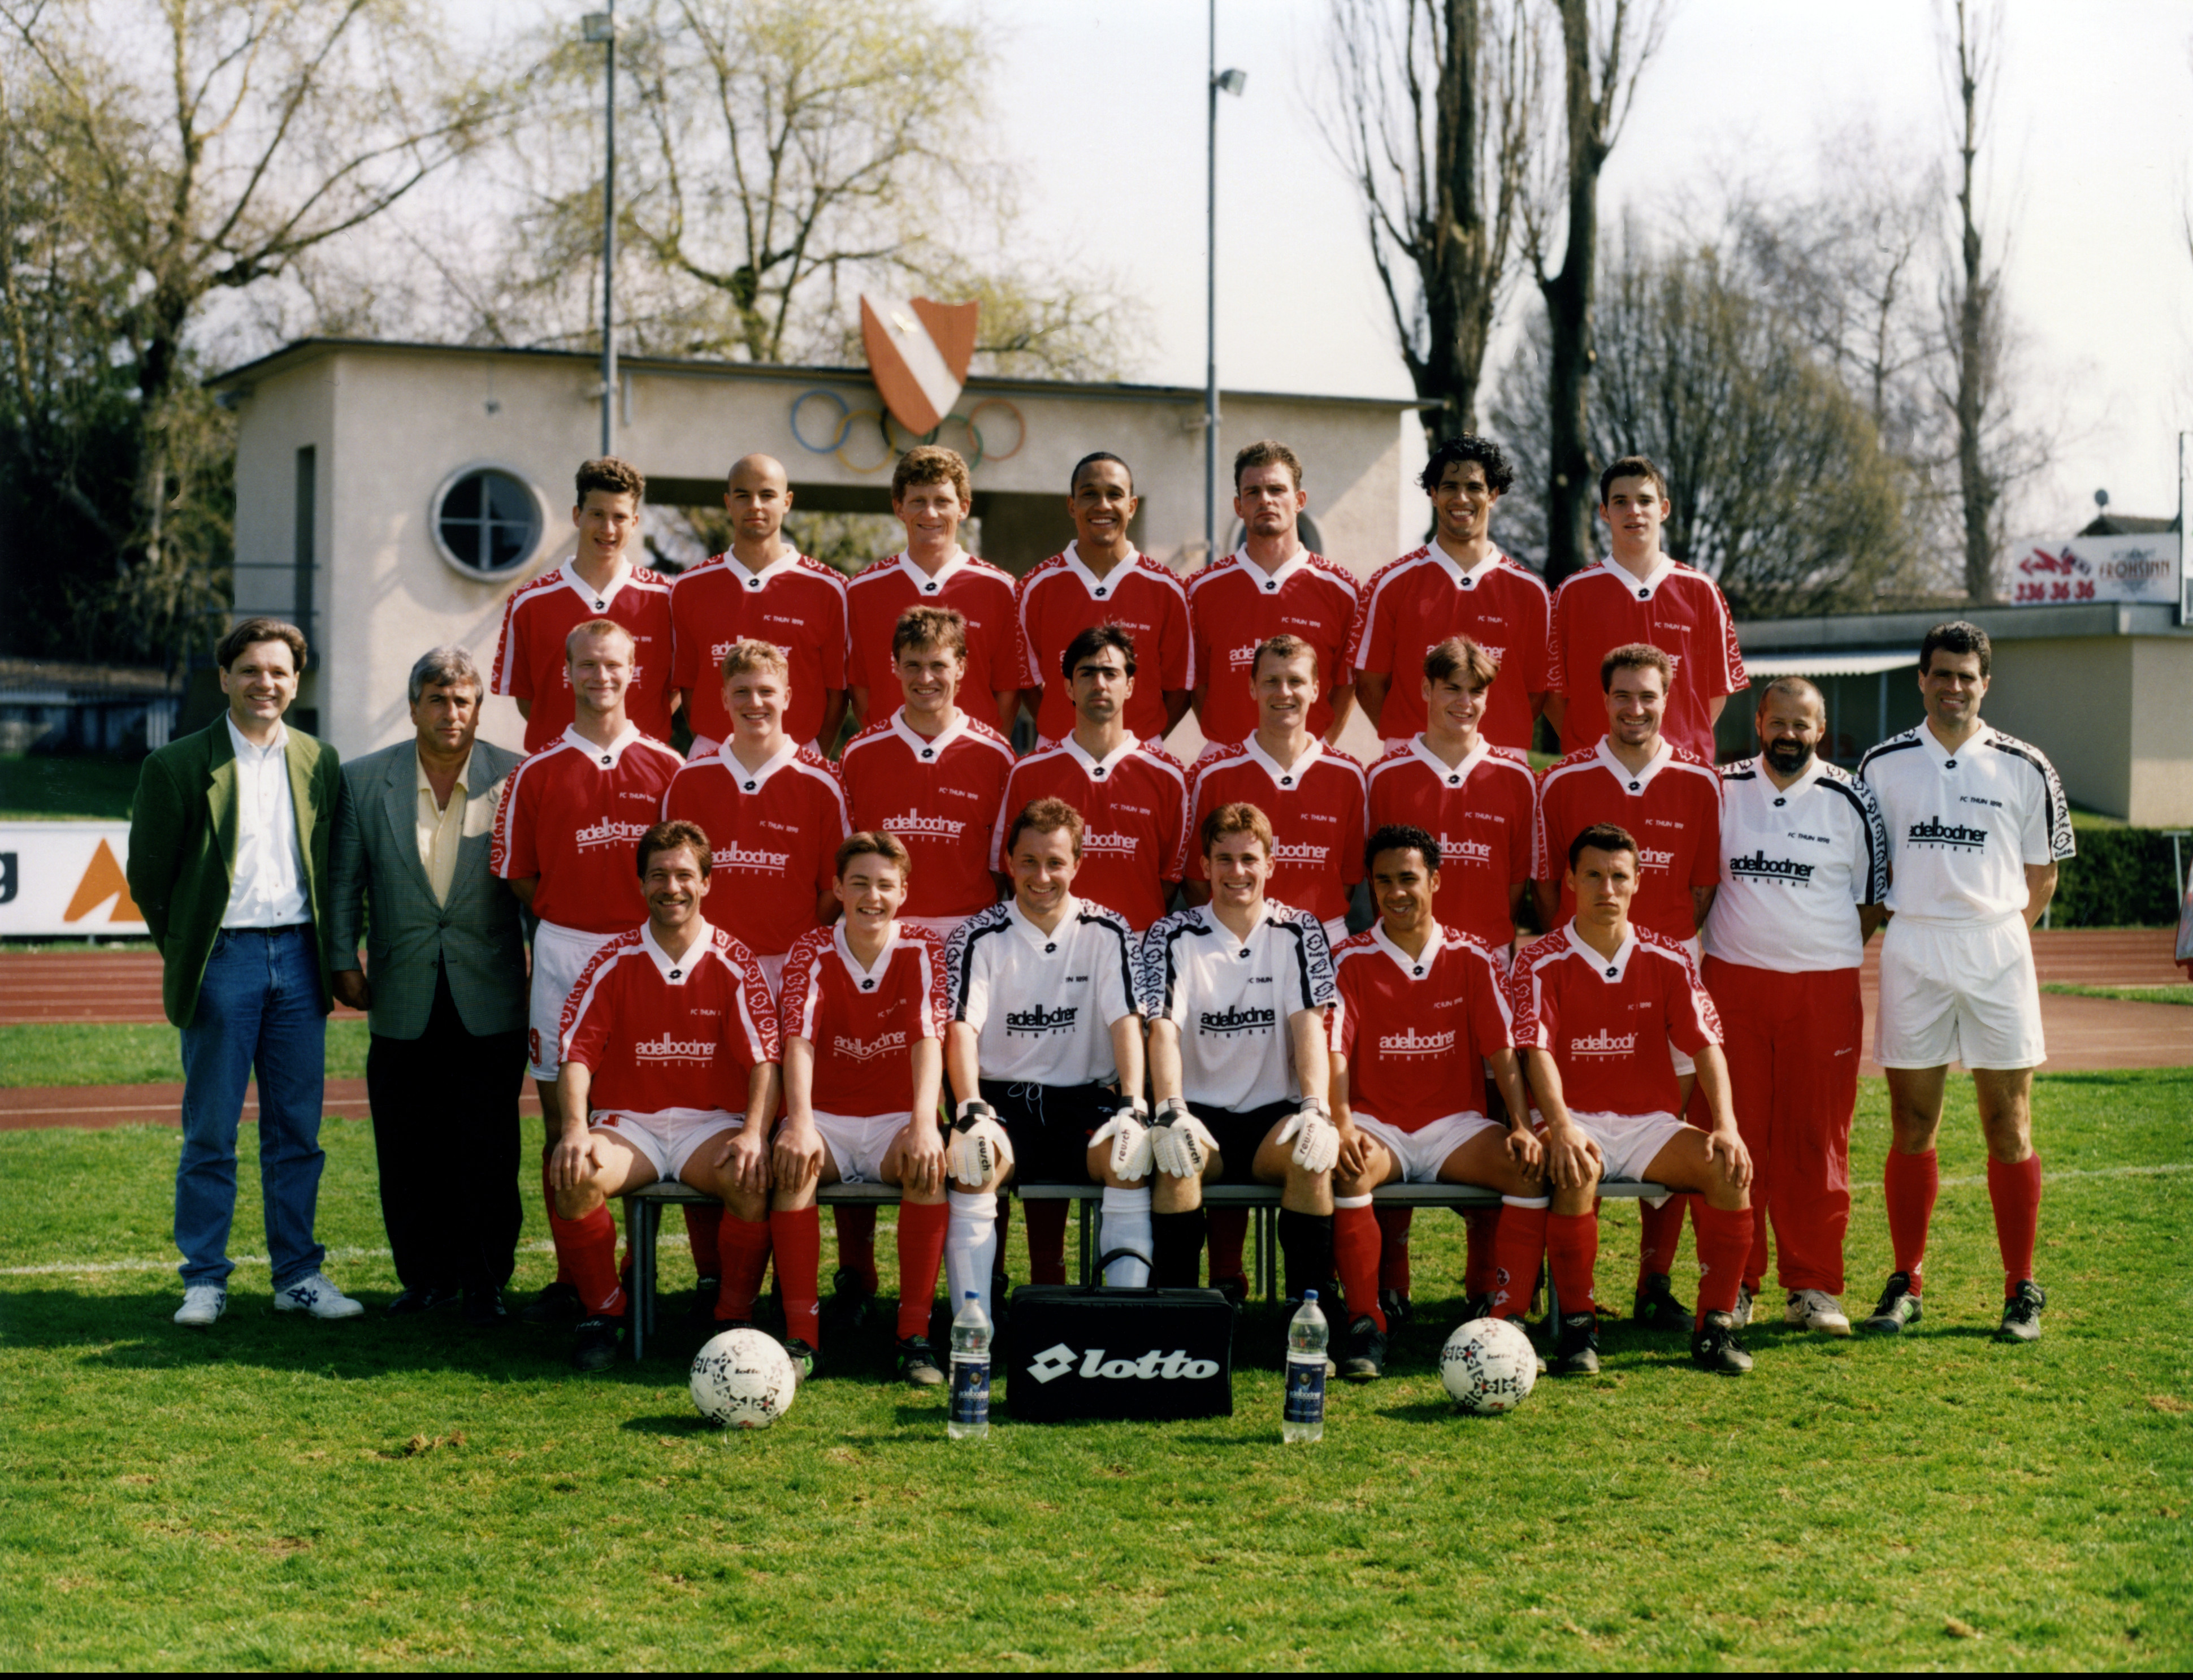 Schweizerischer Fussballverband - Der FC Lugano gewinnt den 97. Schweizer  Cupfinal